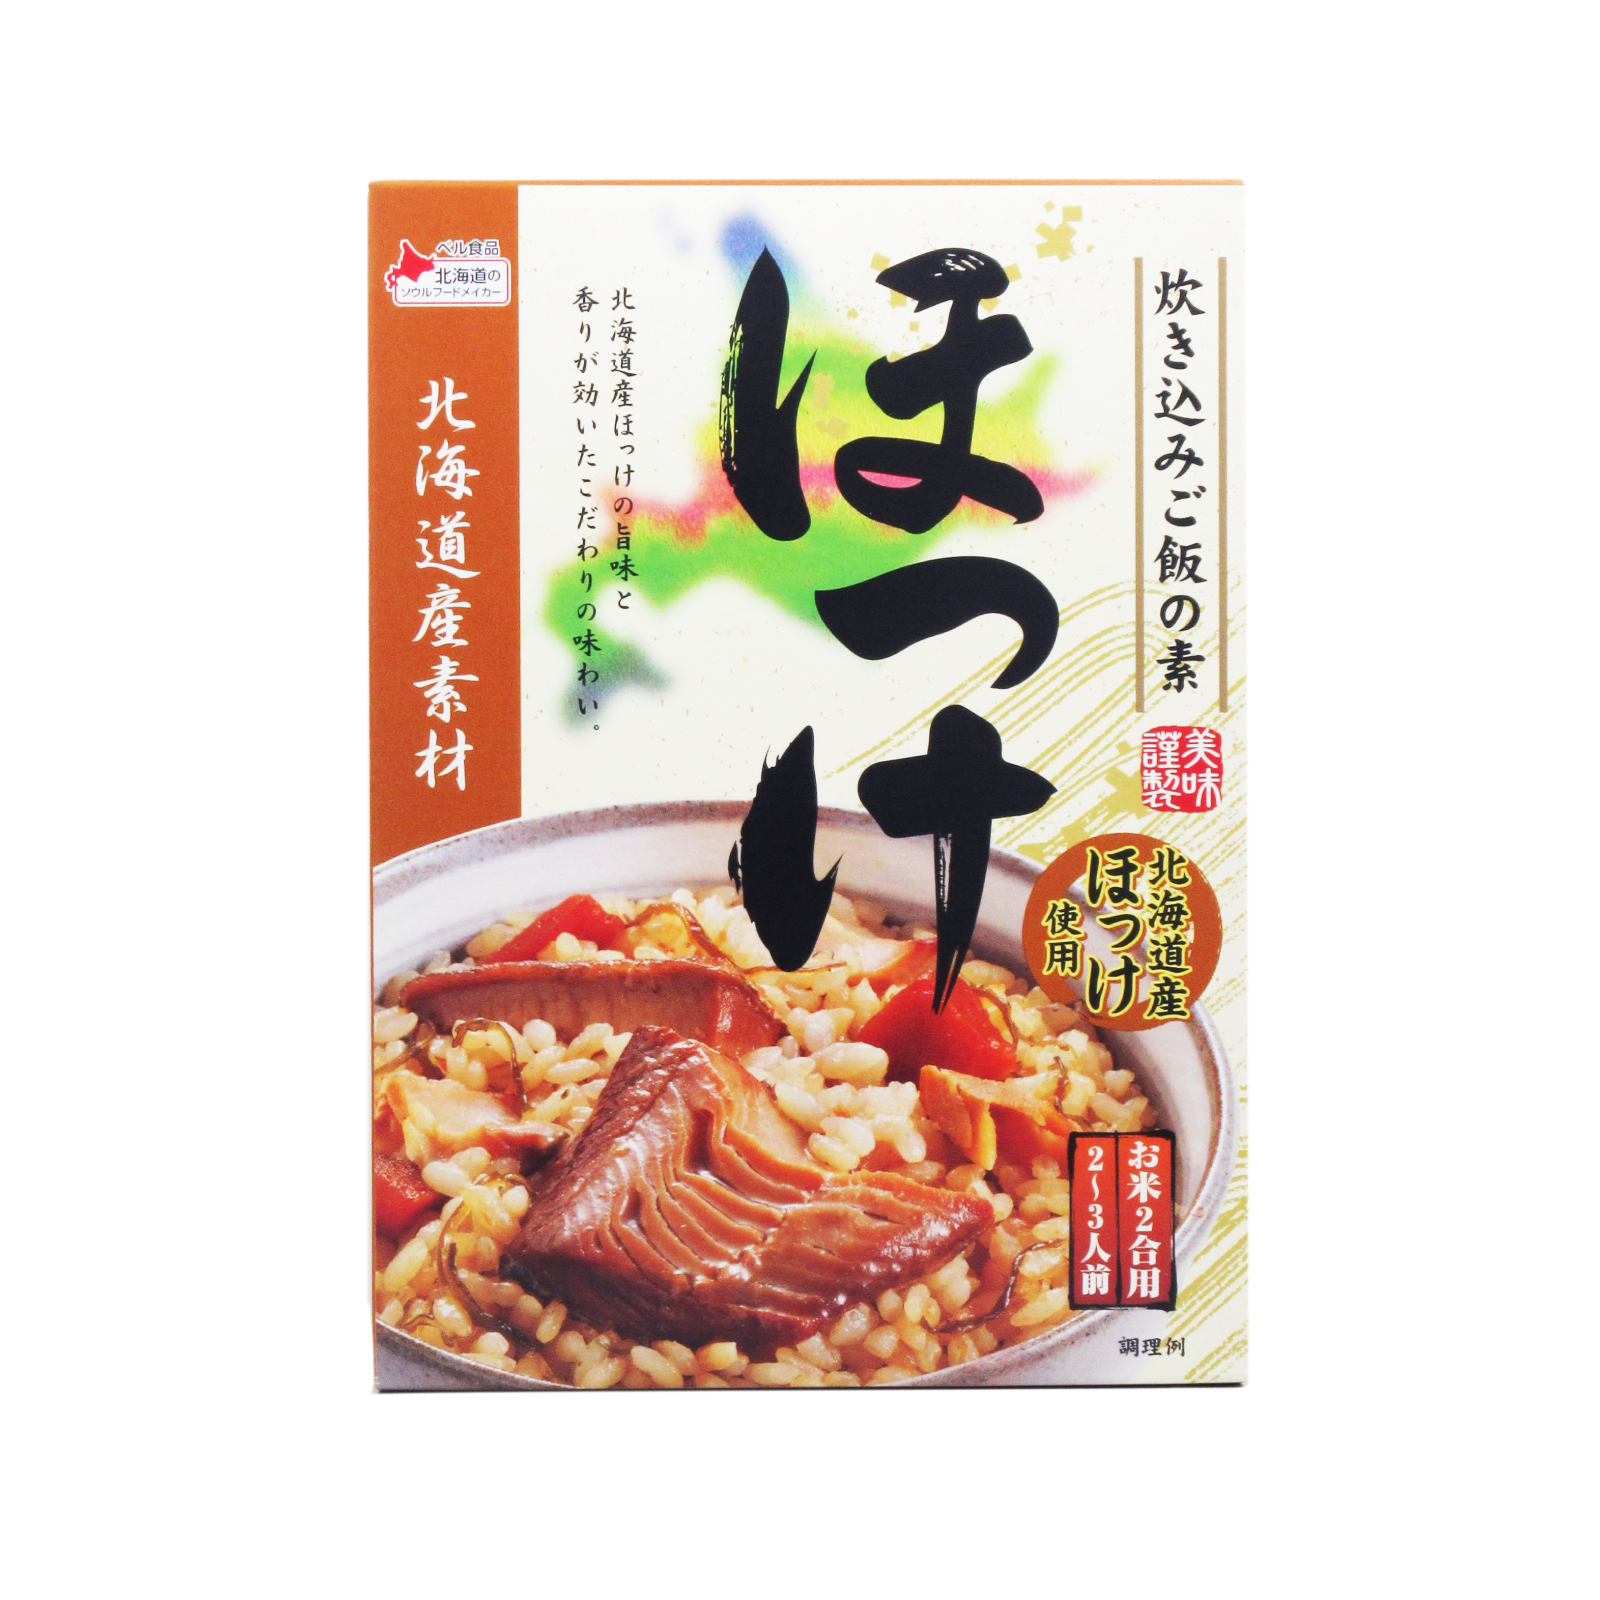 北海道産素材 炊き込みご飯の素 ほっけ 160g